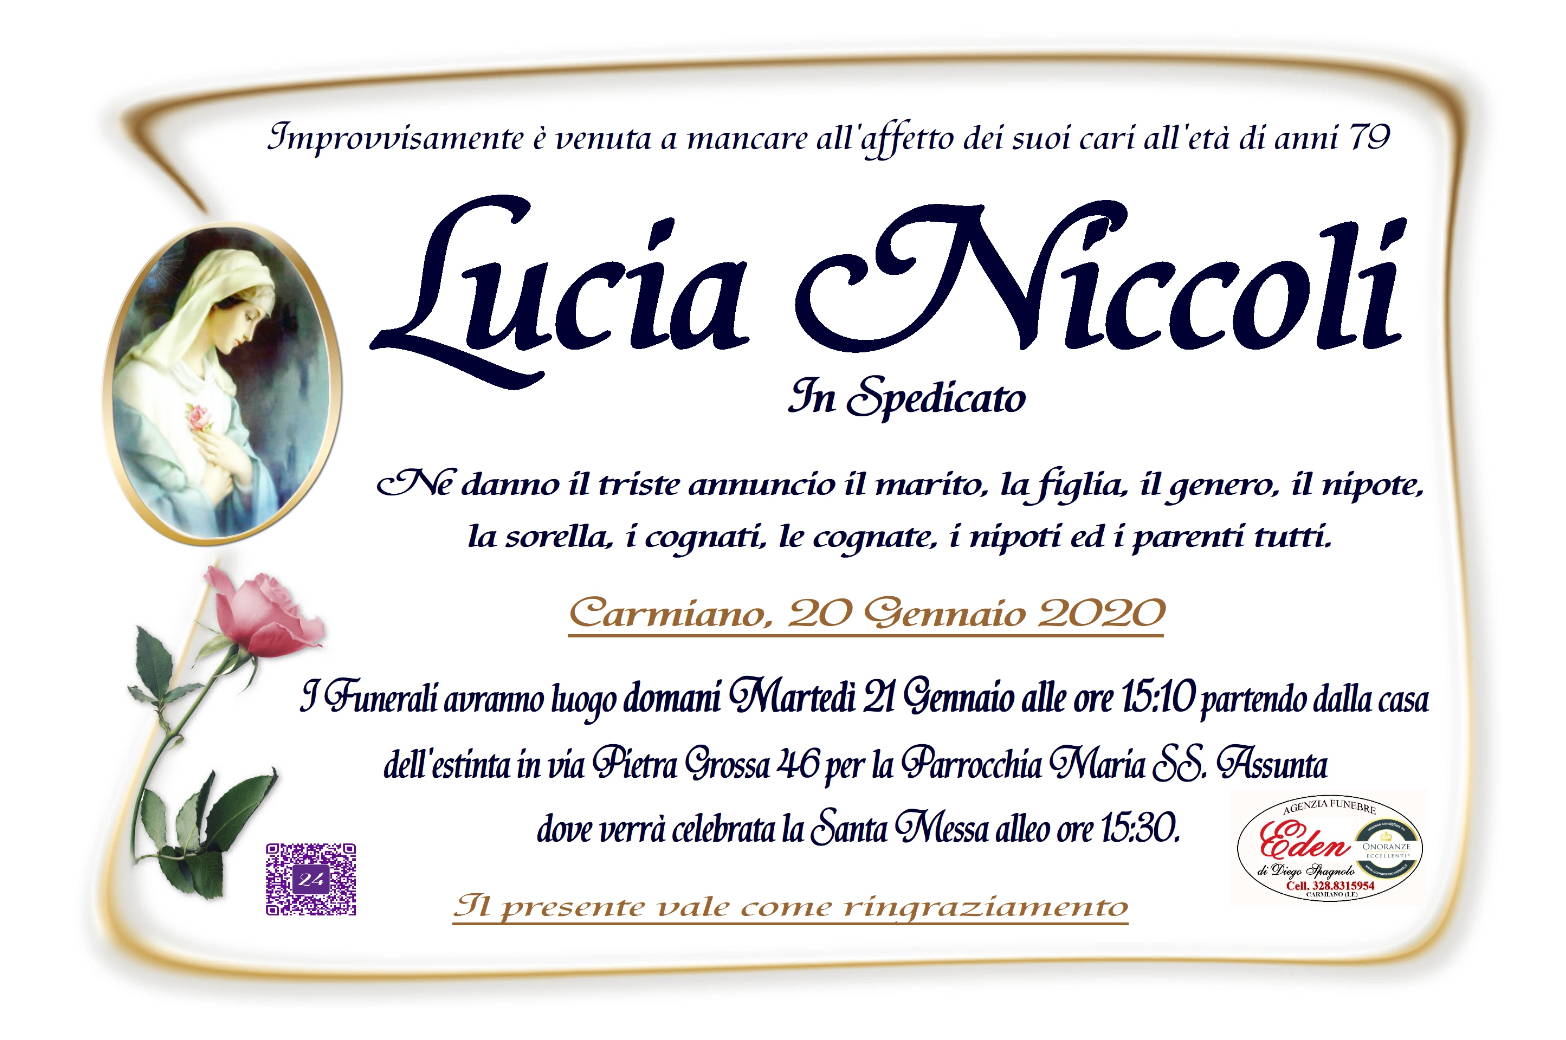 Lucia Niccoli